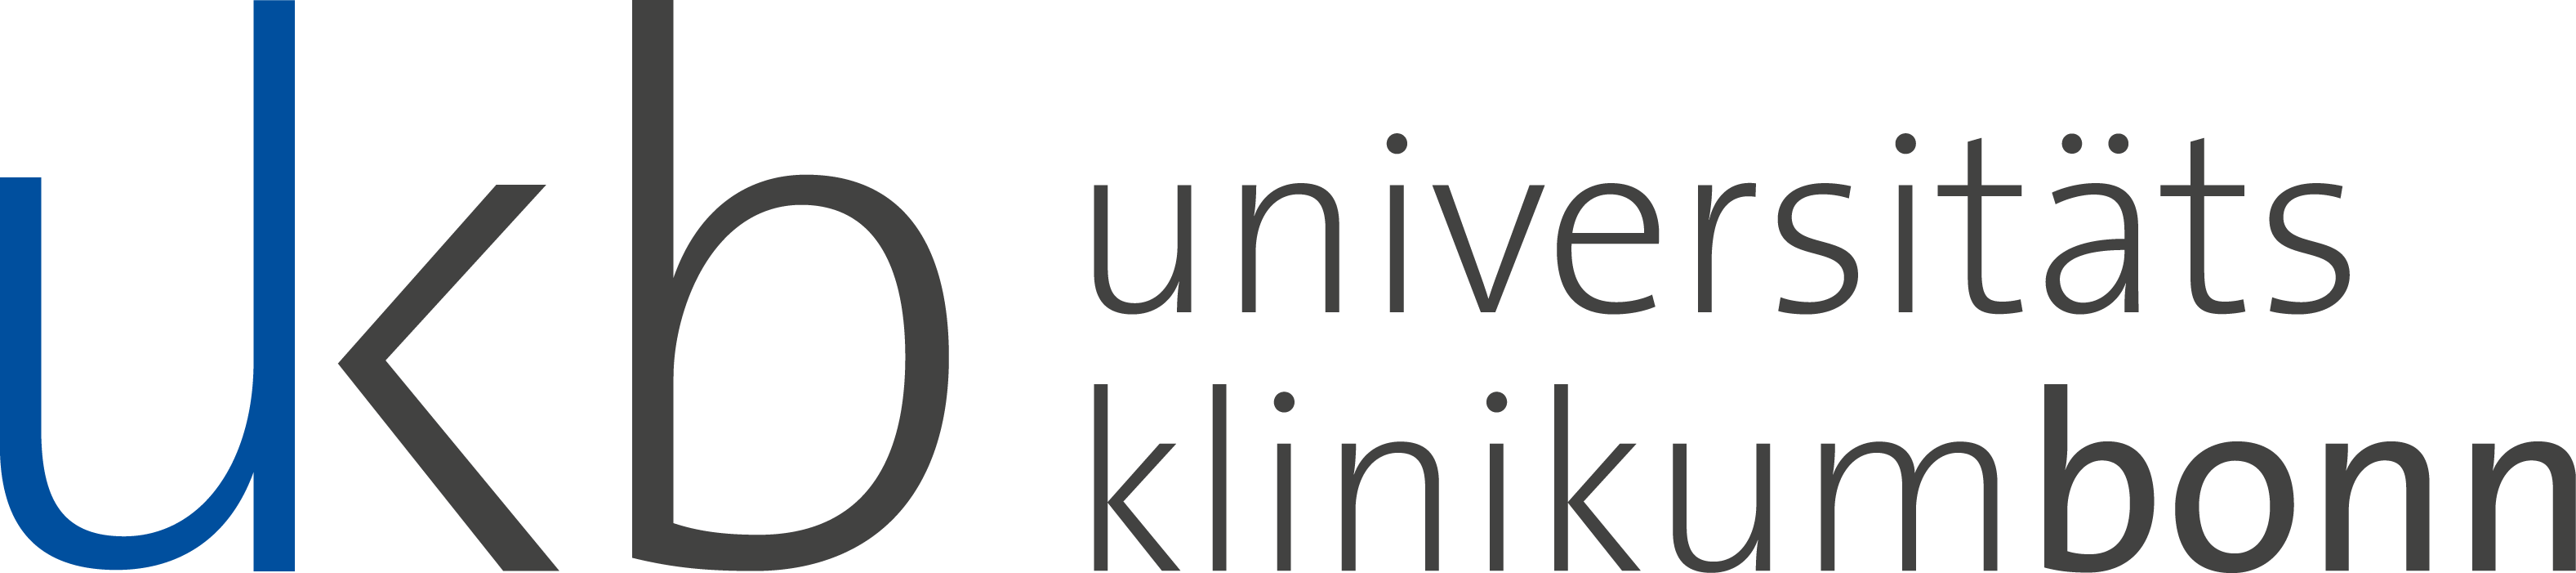 Pflege am UKB | Universitätsklinikum Bonn